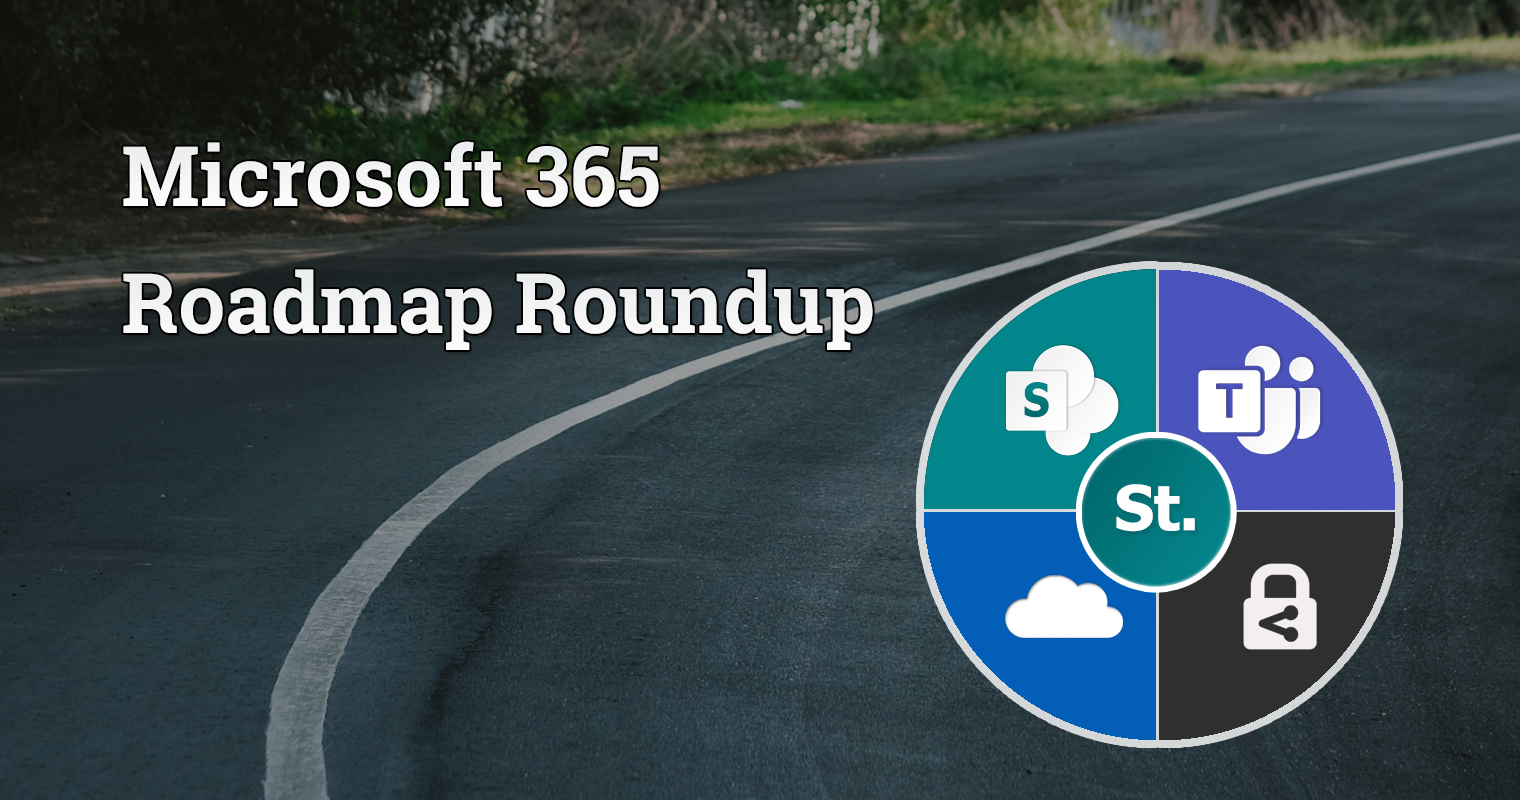 Microsoft 365 roadmap roundup – 23rd January 2023